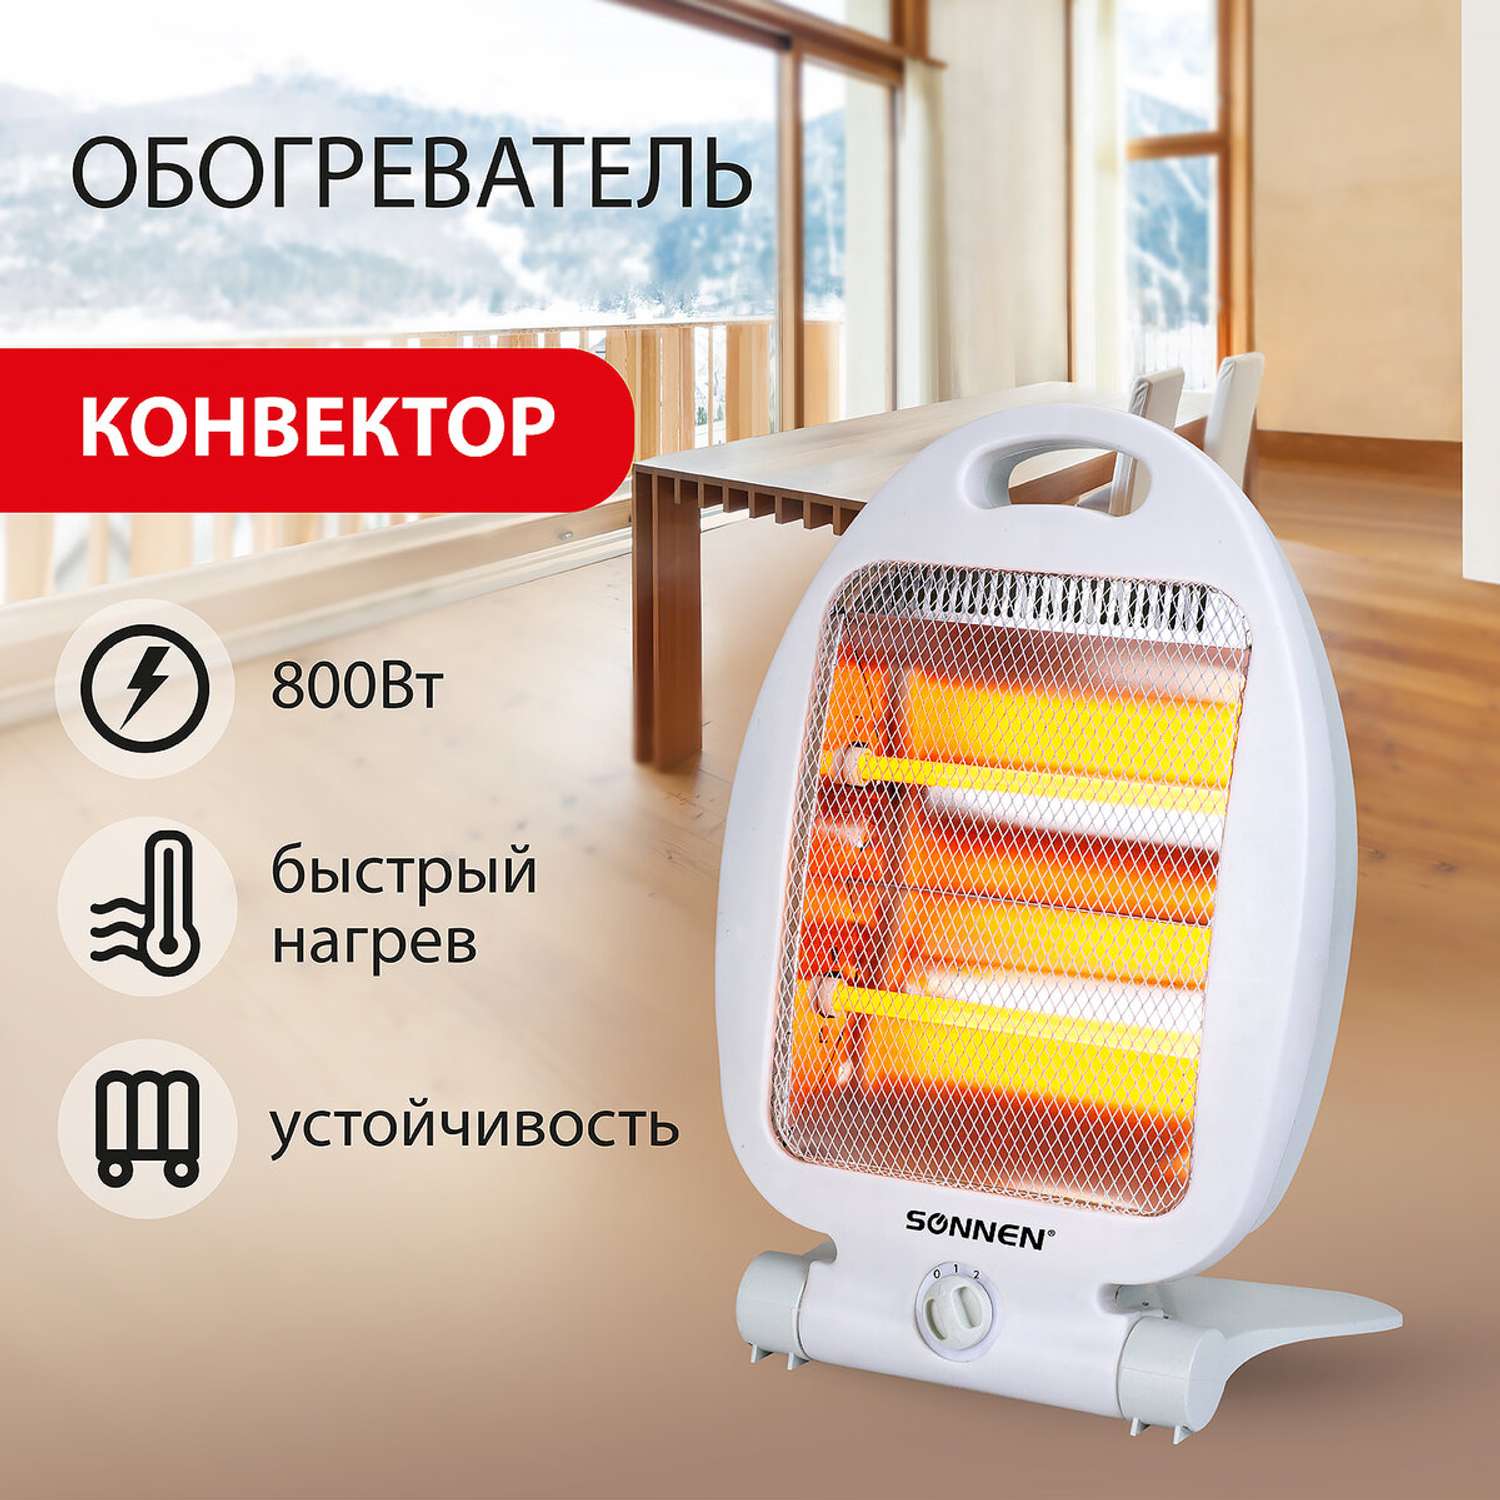 Обогреватель-конвектор Sonnen инфракрасный электрический напольный - фото 2